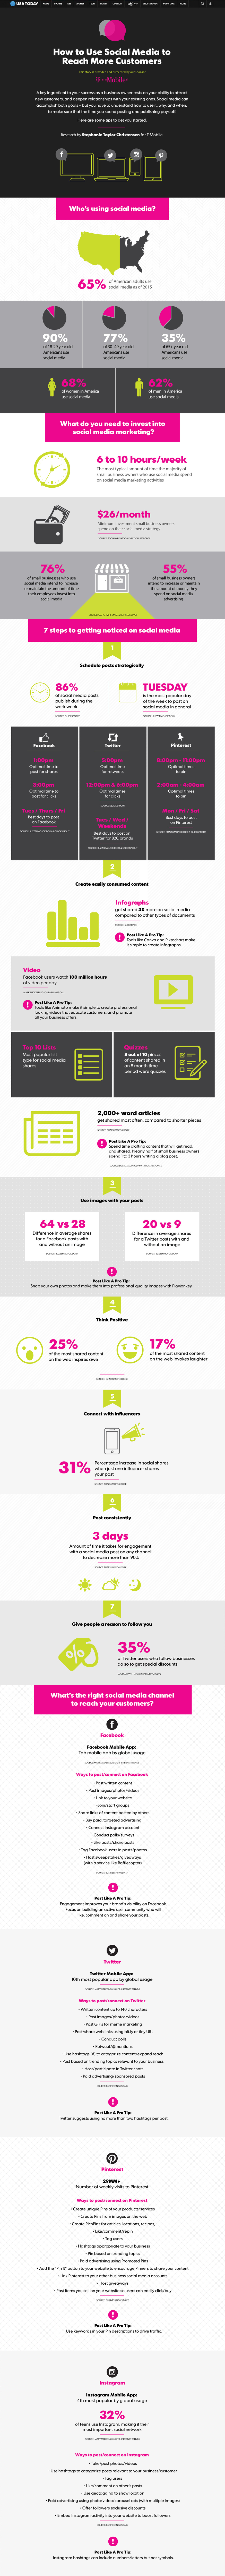 T-Mobile_infographics_Social-Media-Static_design v2.jpg